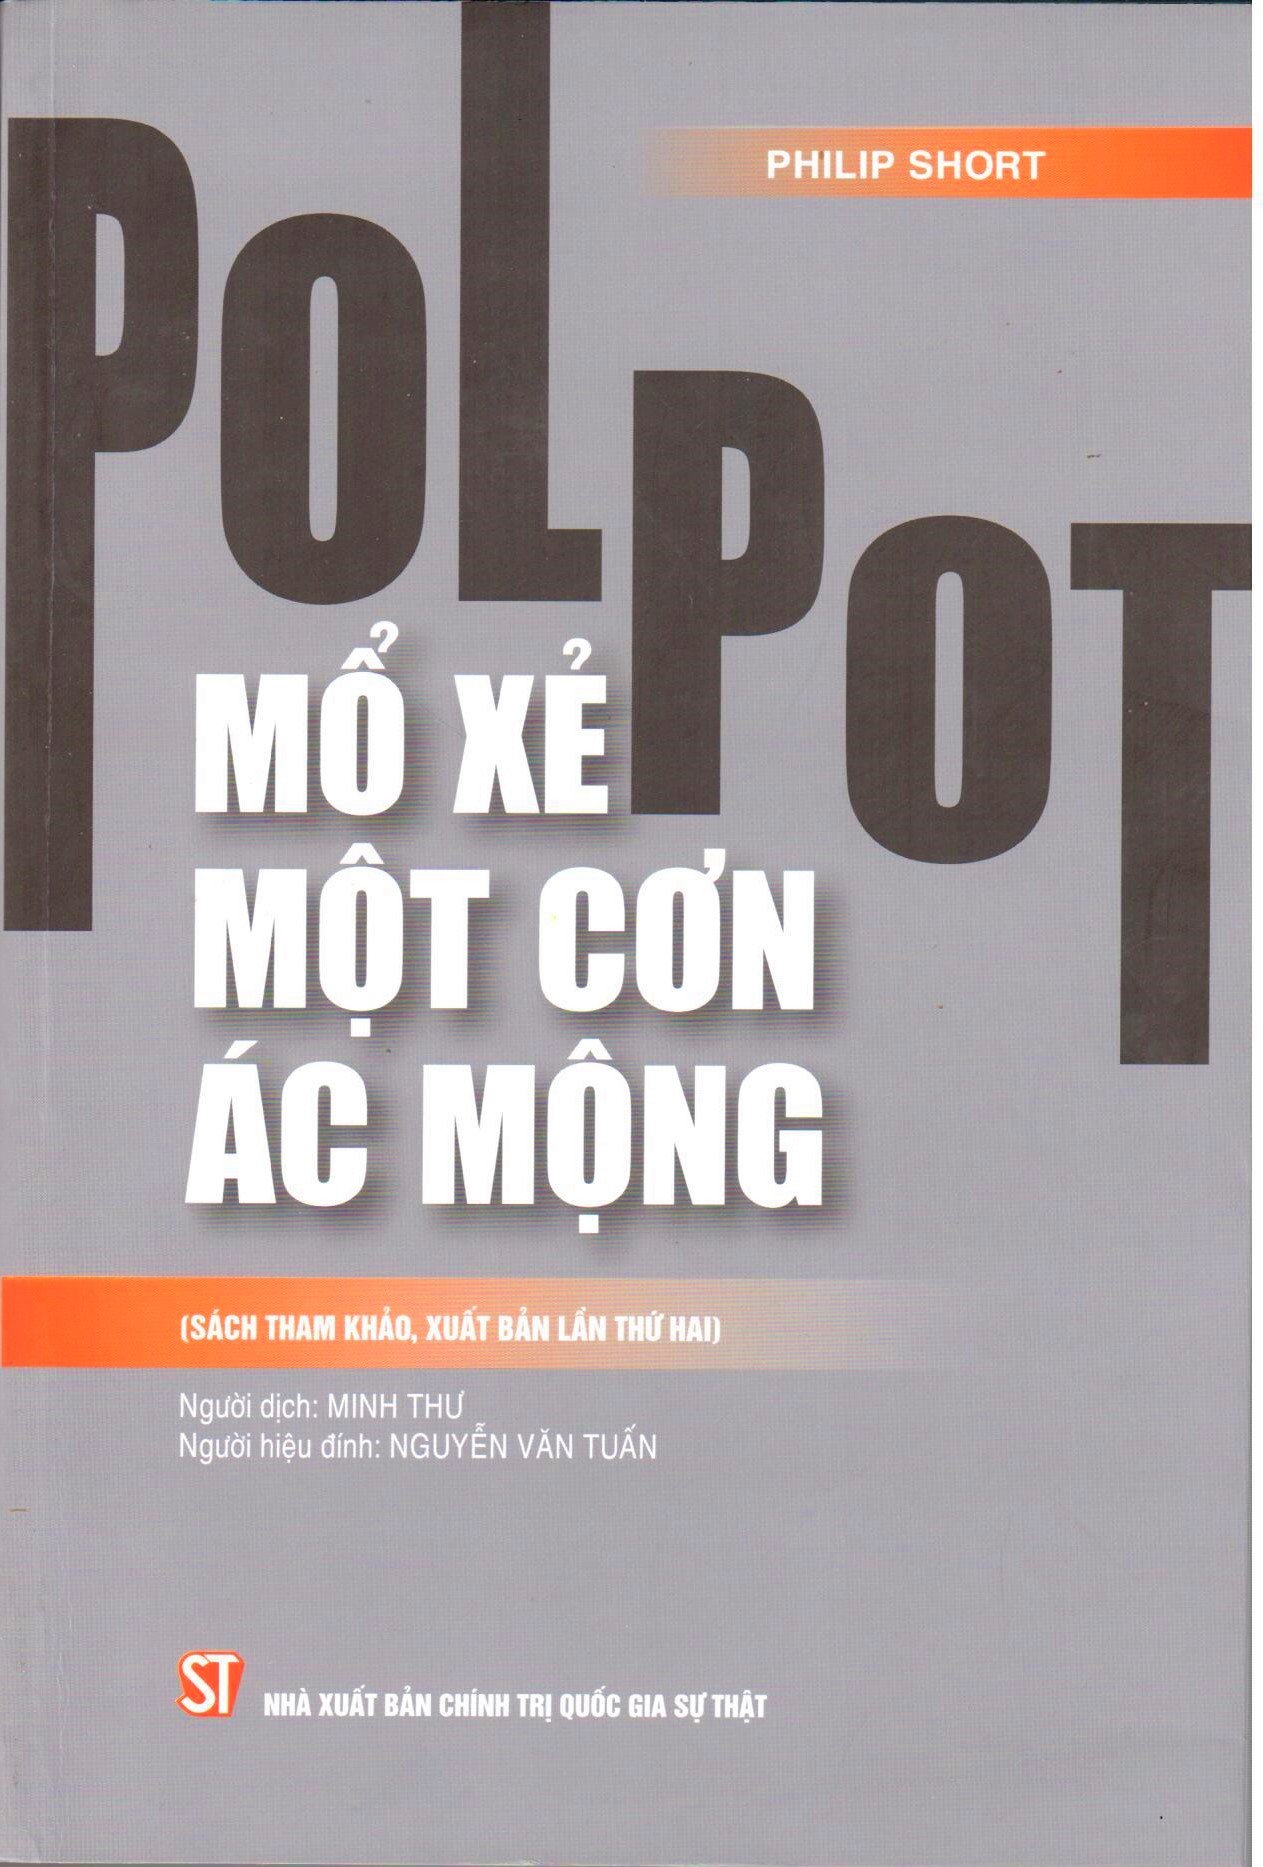 Pol Pot: Mổ xẻ một cơn ác mộng (Sách tham khảo, Xuất bản lần thứ hai)